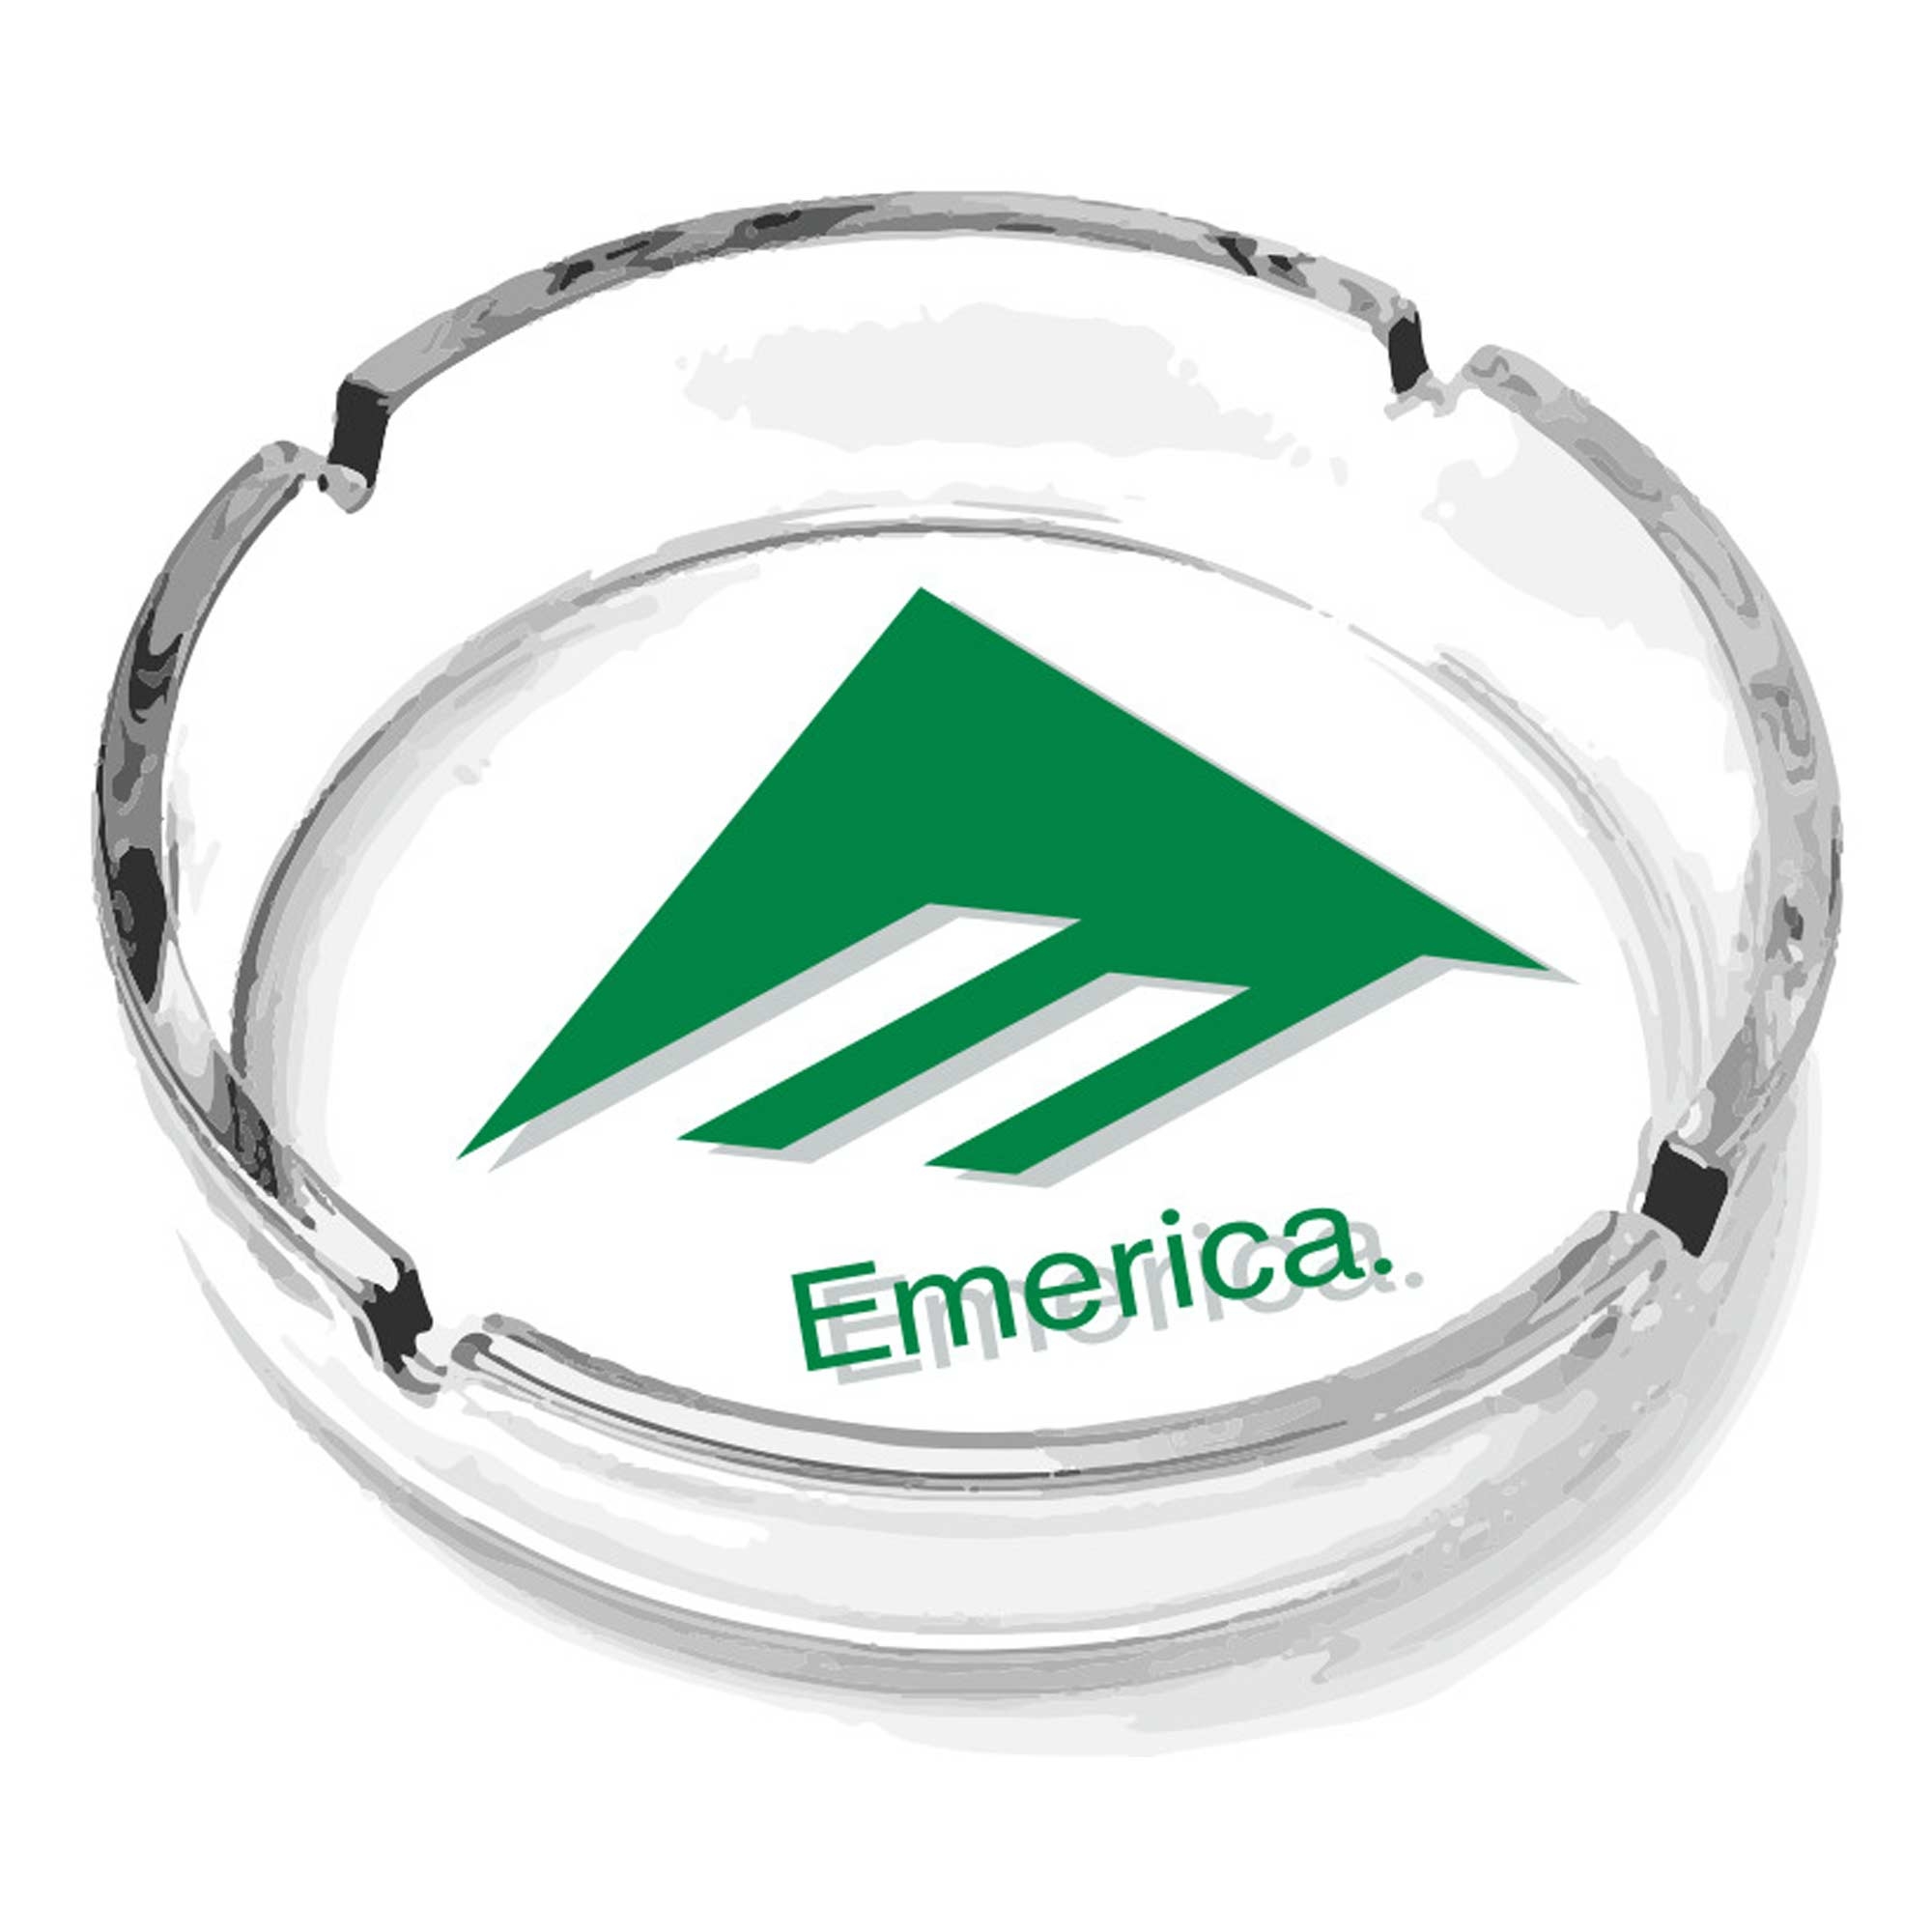 EMERICA Accessory EMERICA ASHTRAY, green